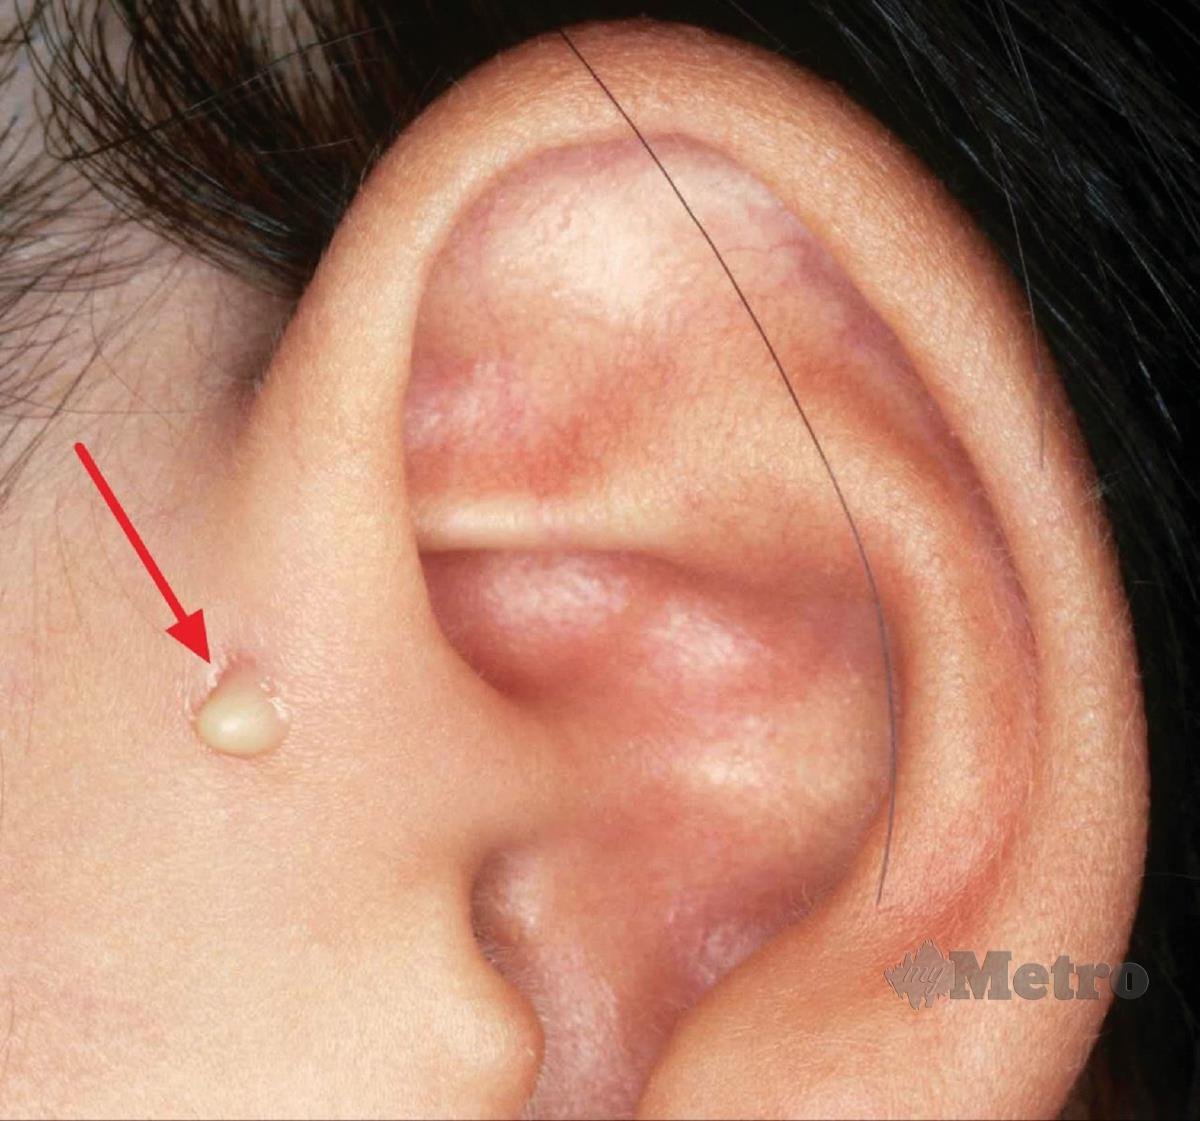 NANAH meleleh ke sinus (bukaan) pada telinga menunjukkan jangkitan.